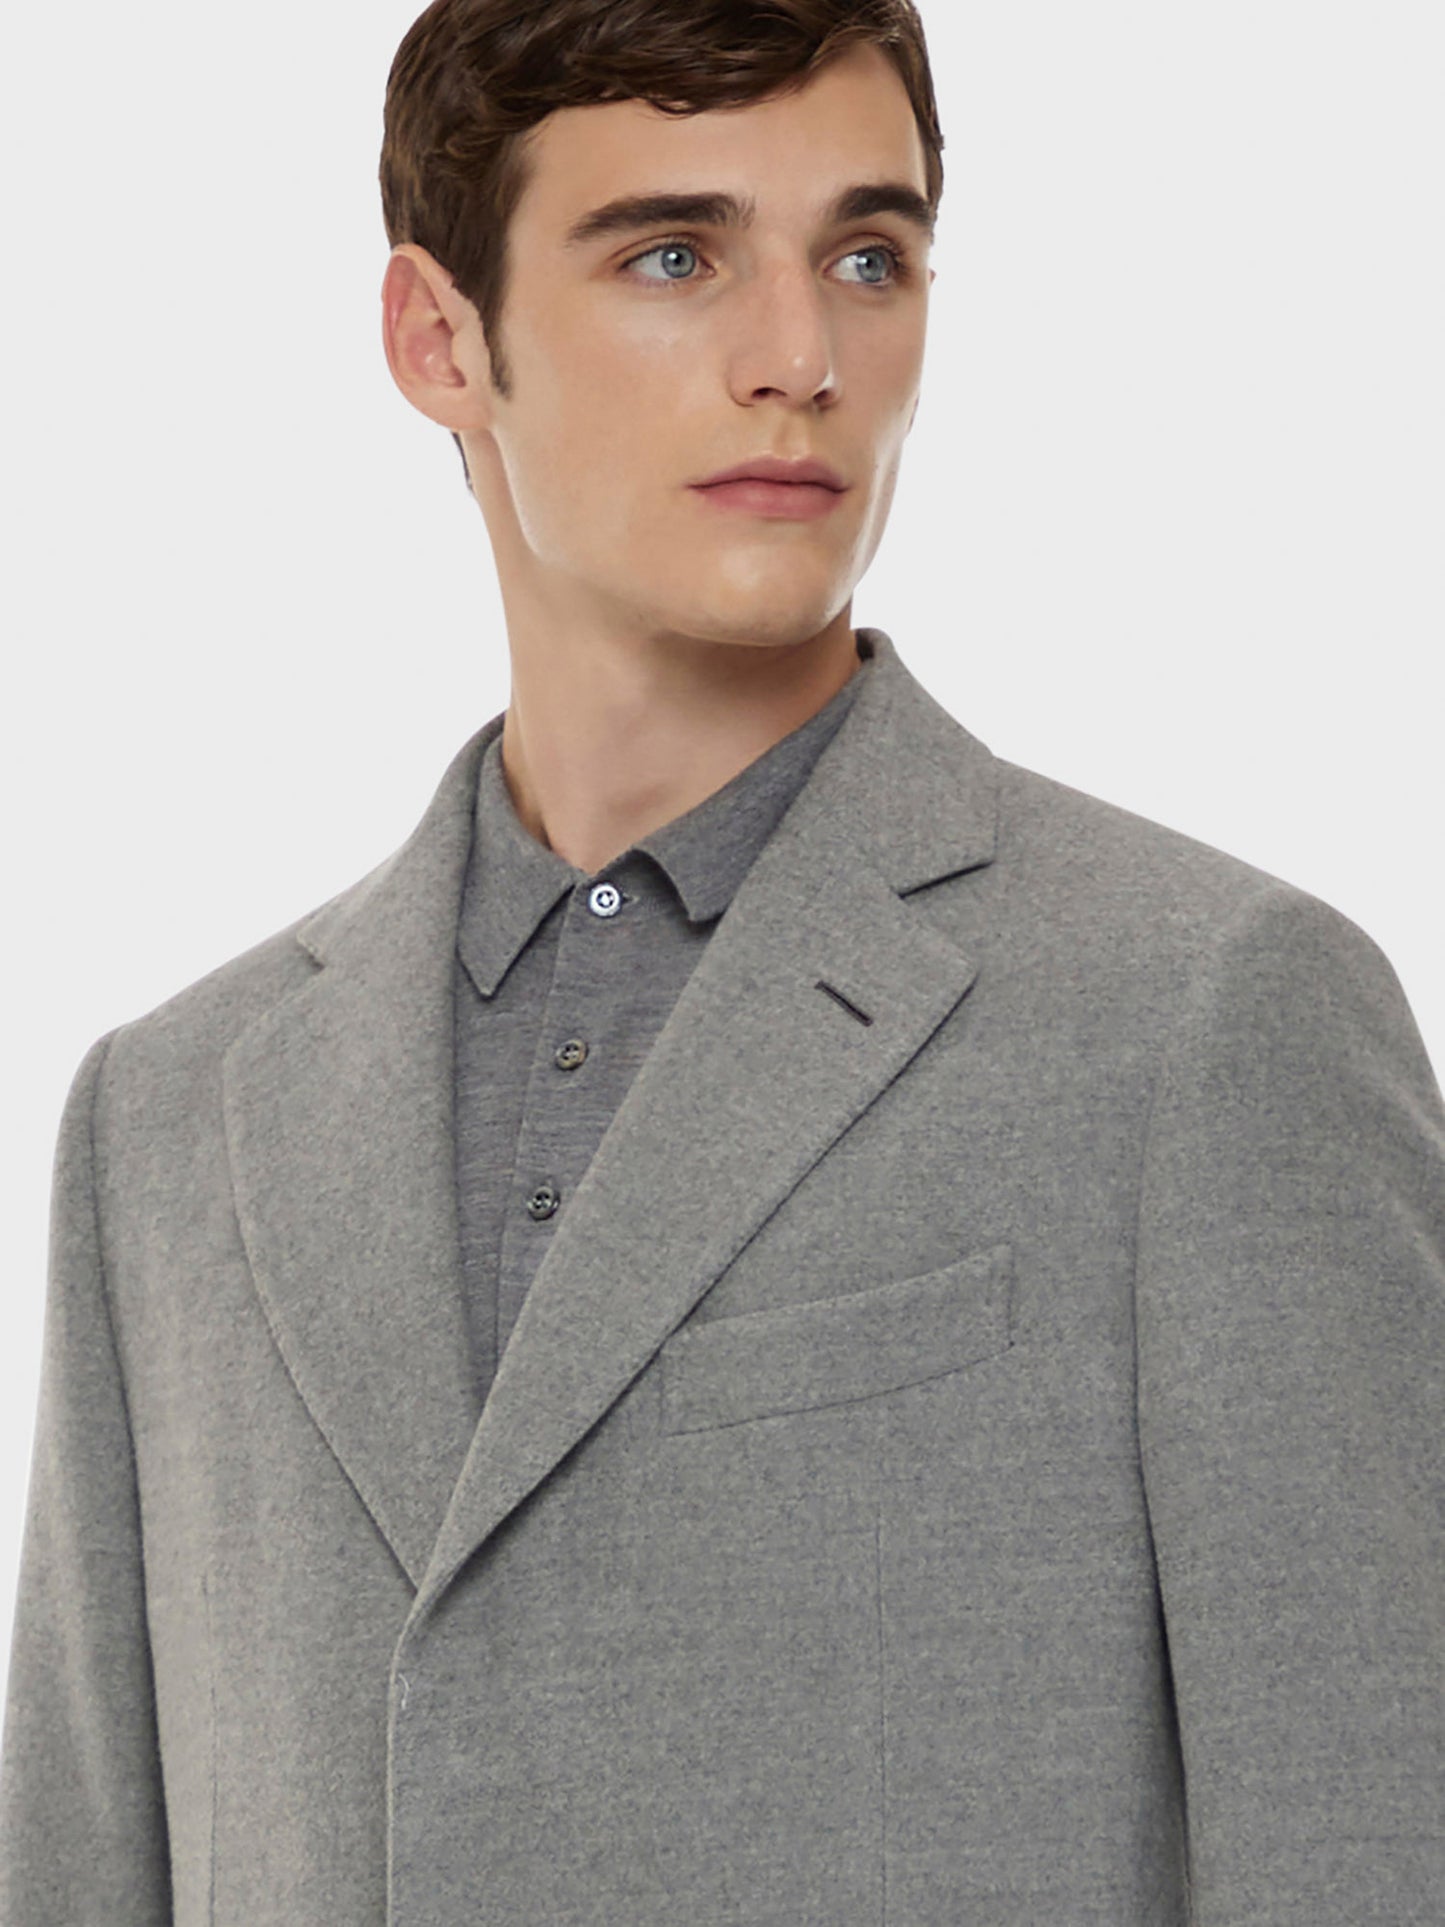 Caruso Menswear Abbigliamento Uomo Cappotto norma in lana "Nuage" 180's grigio dettaglio